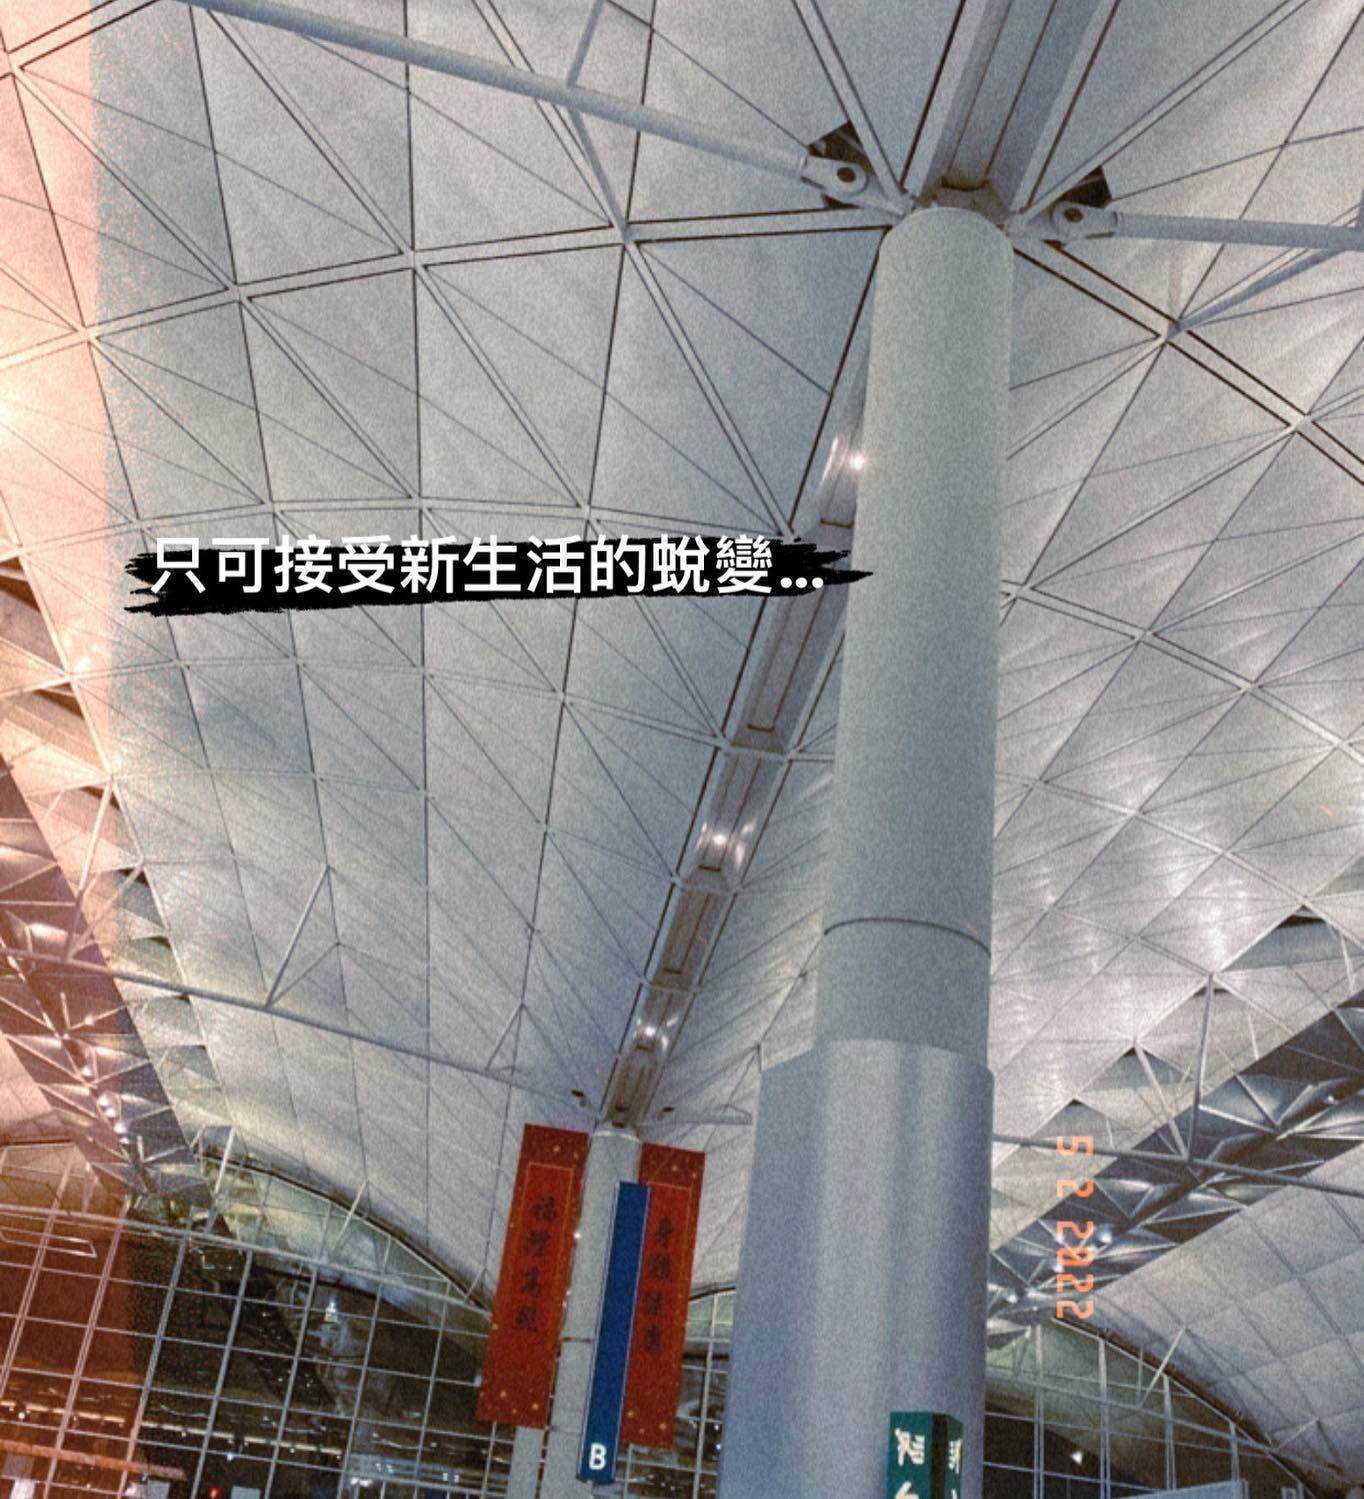 釗峰在Ig貼機場照並引用《留下來的人》歌詞。（Ig圖片）